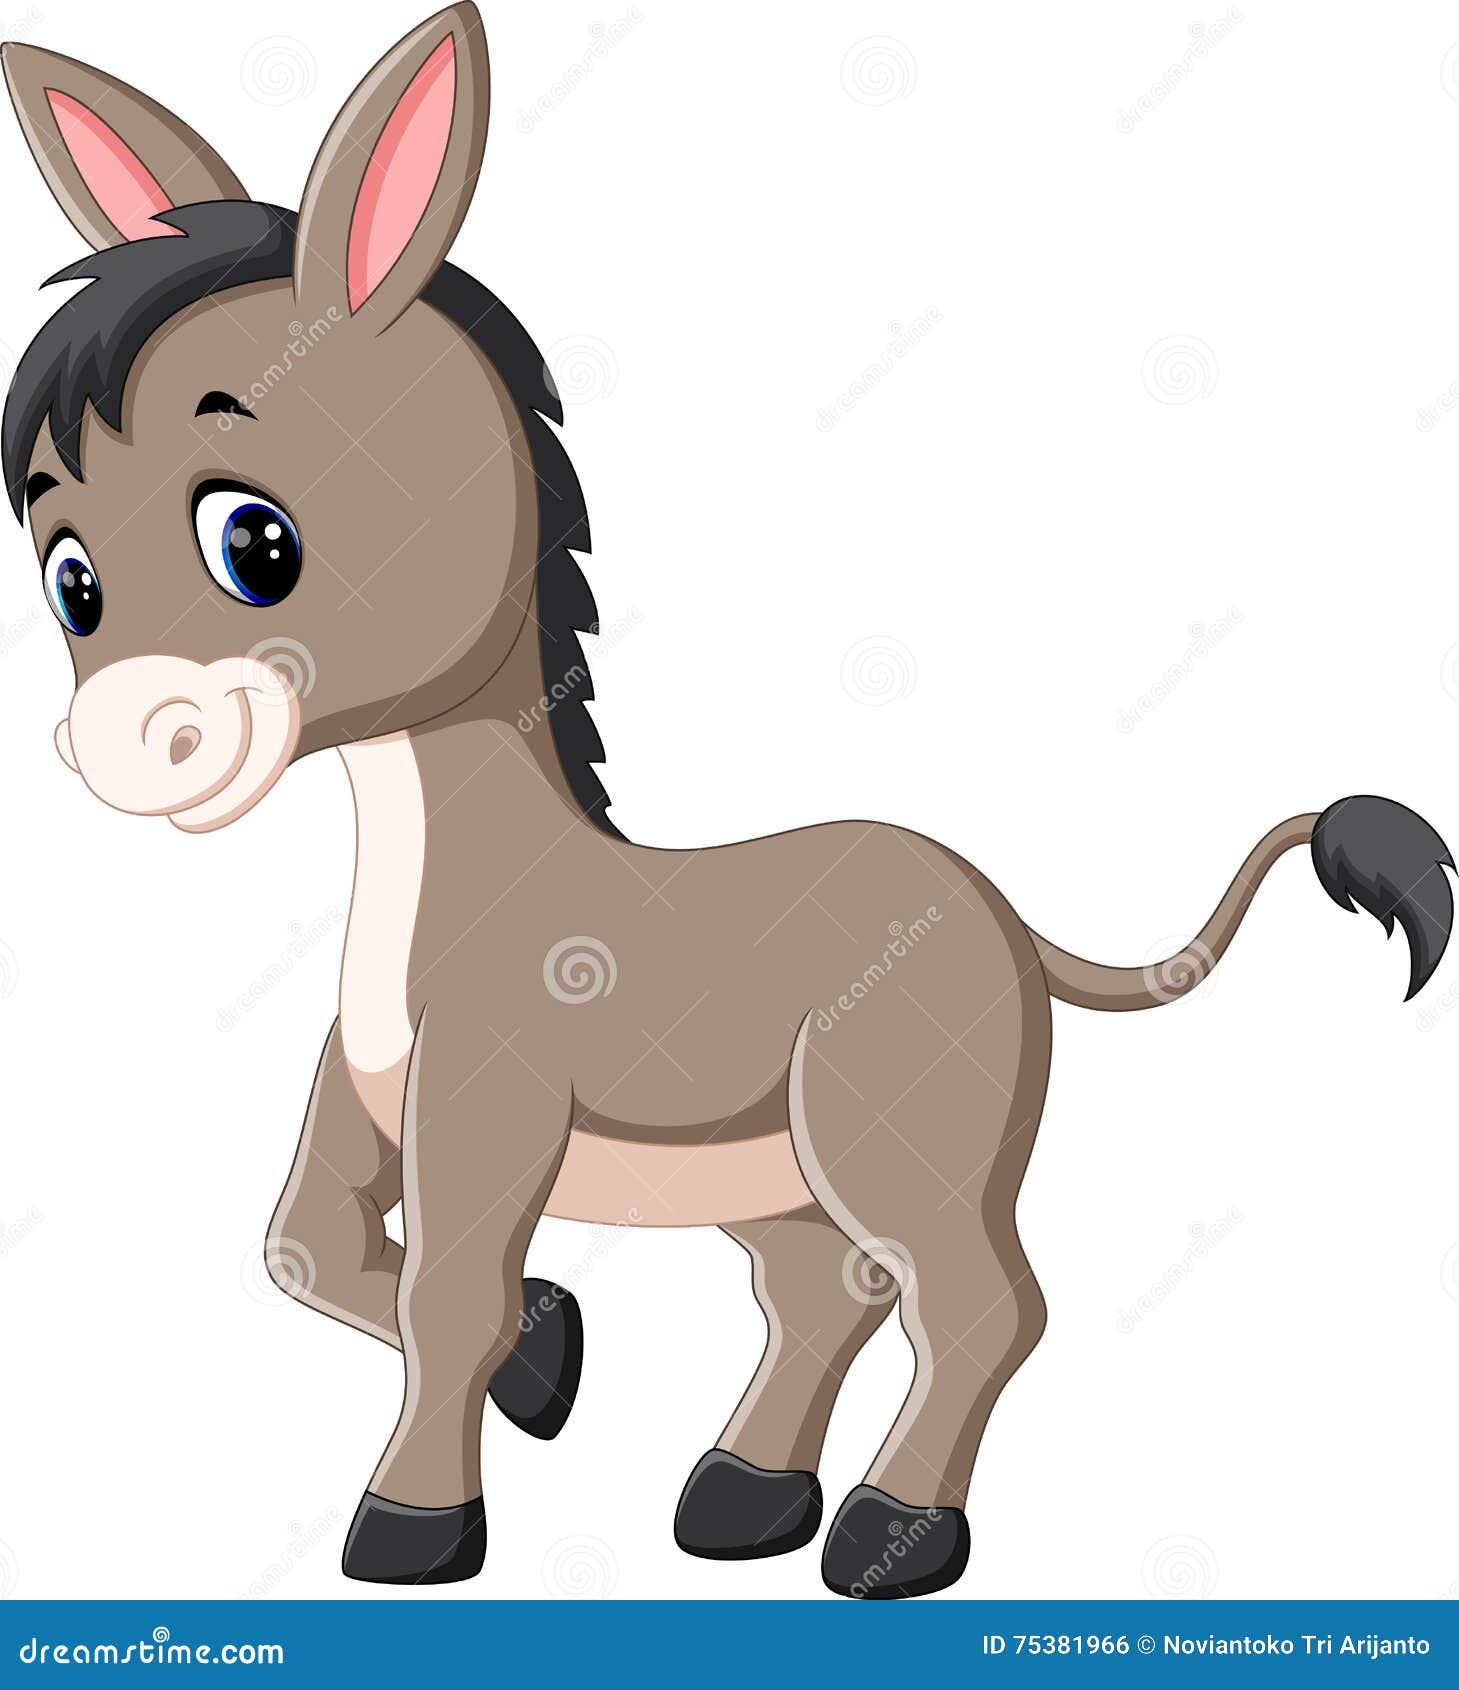 Cartoon happy donkey stock vector. Illustration of livestock - 75381966